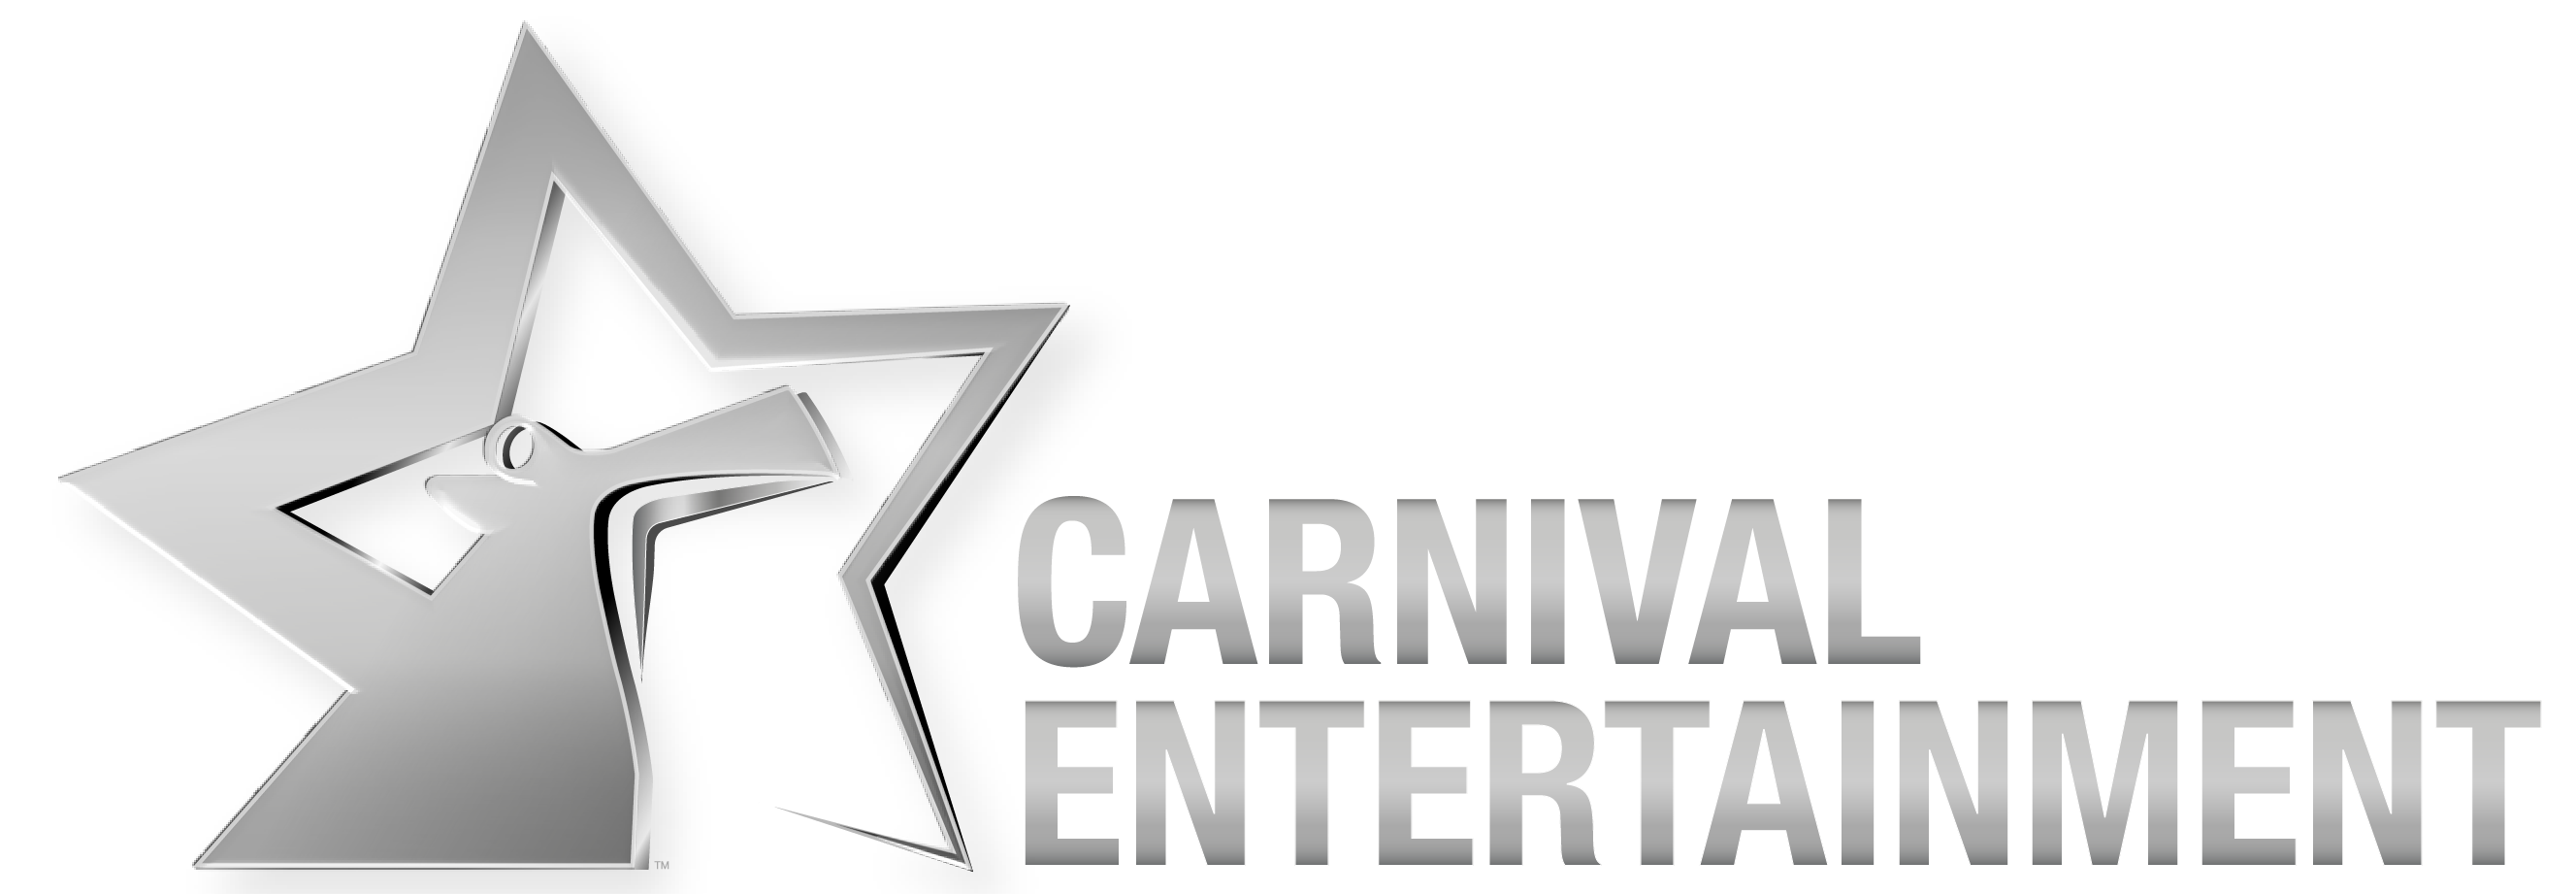 carnival cruise dj schedule